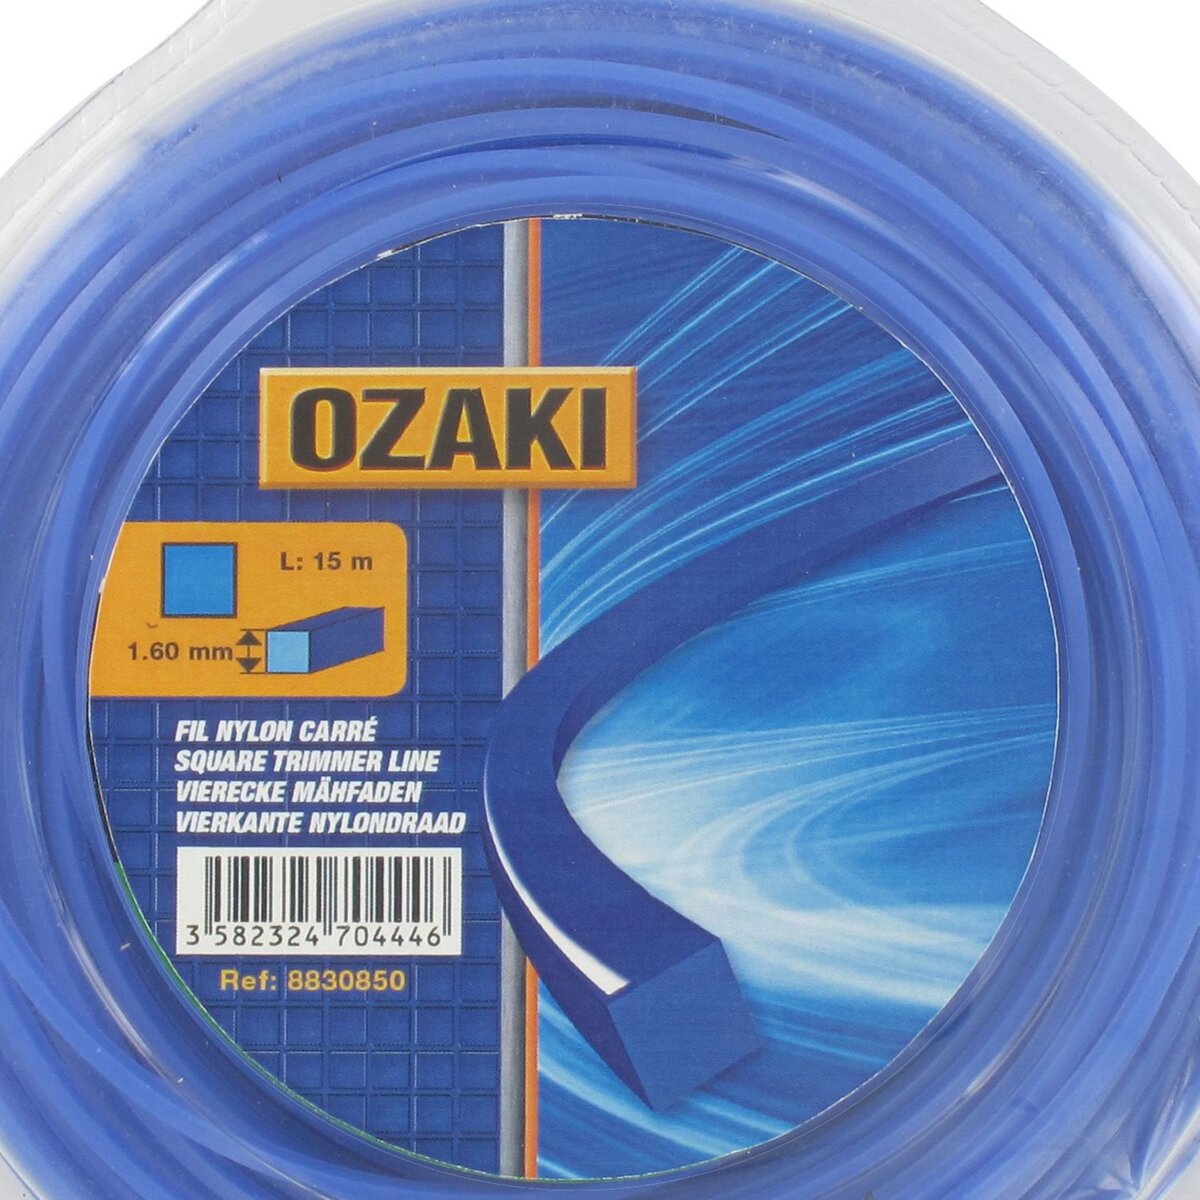 OZAKI Fil nylon carré d. 2,4 mm 